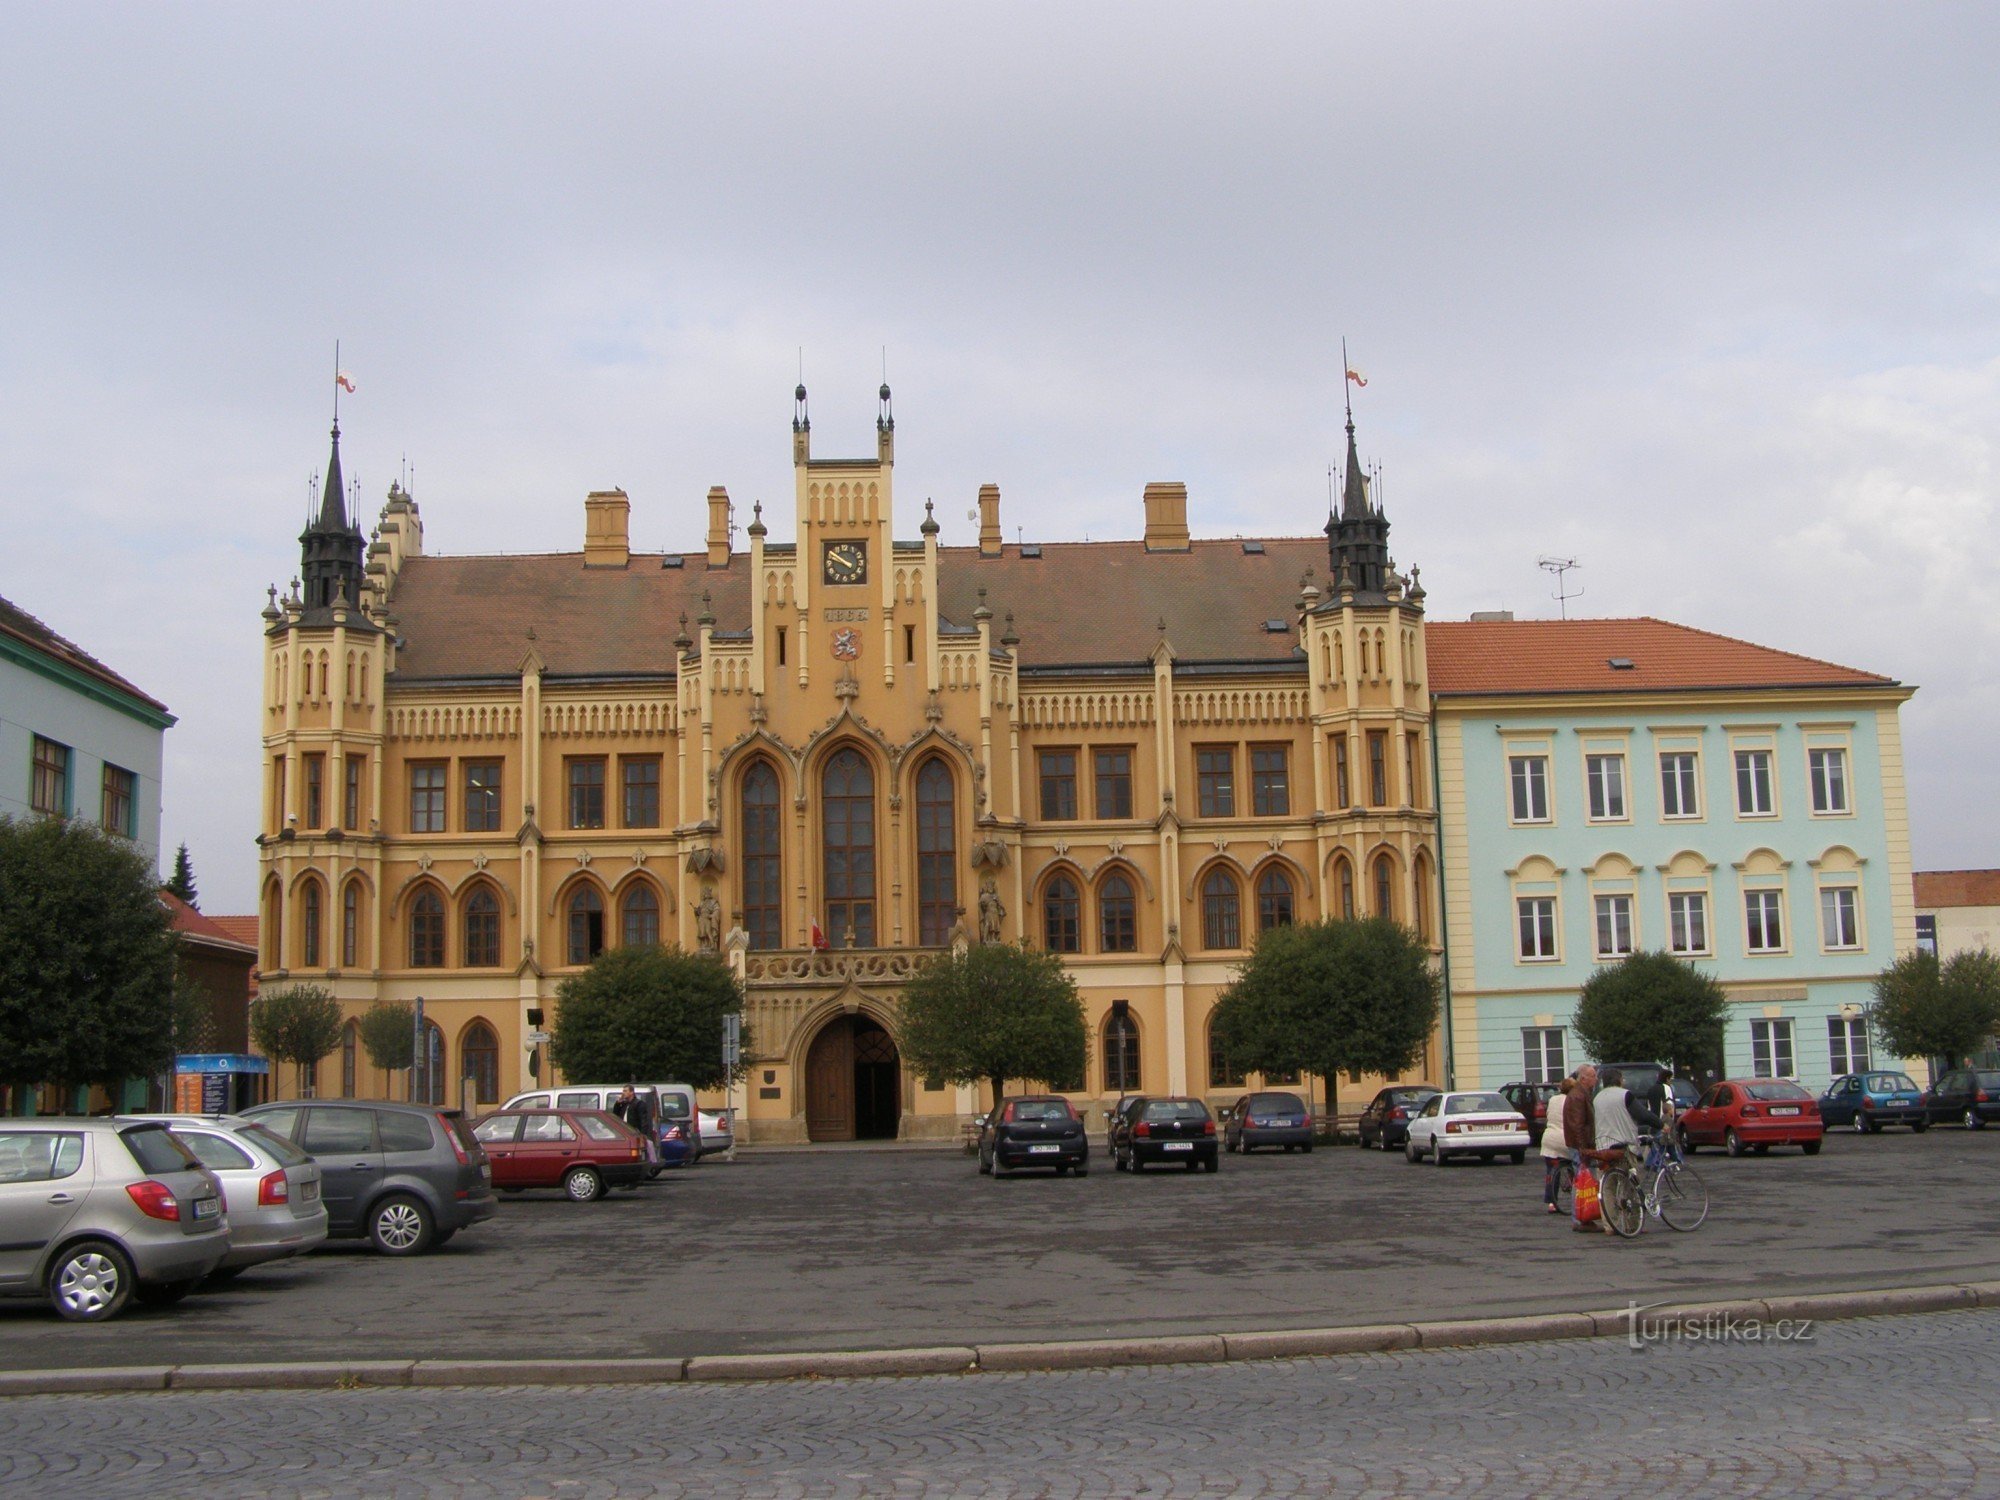 Nový Bydžov - rådhuset